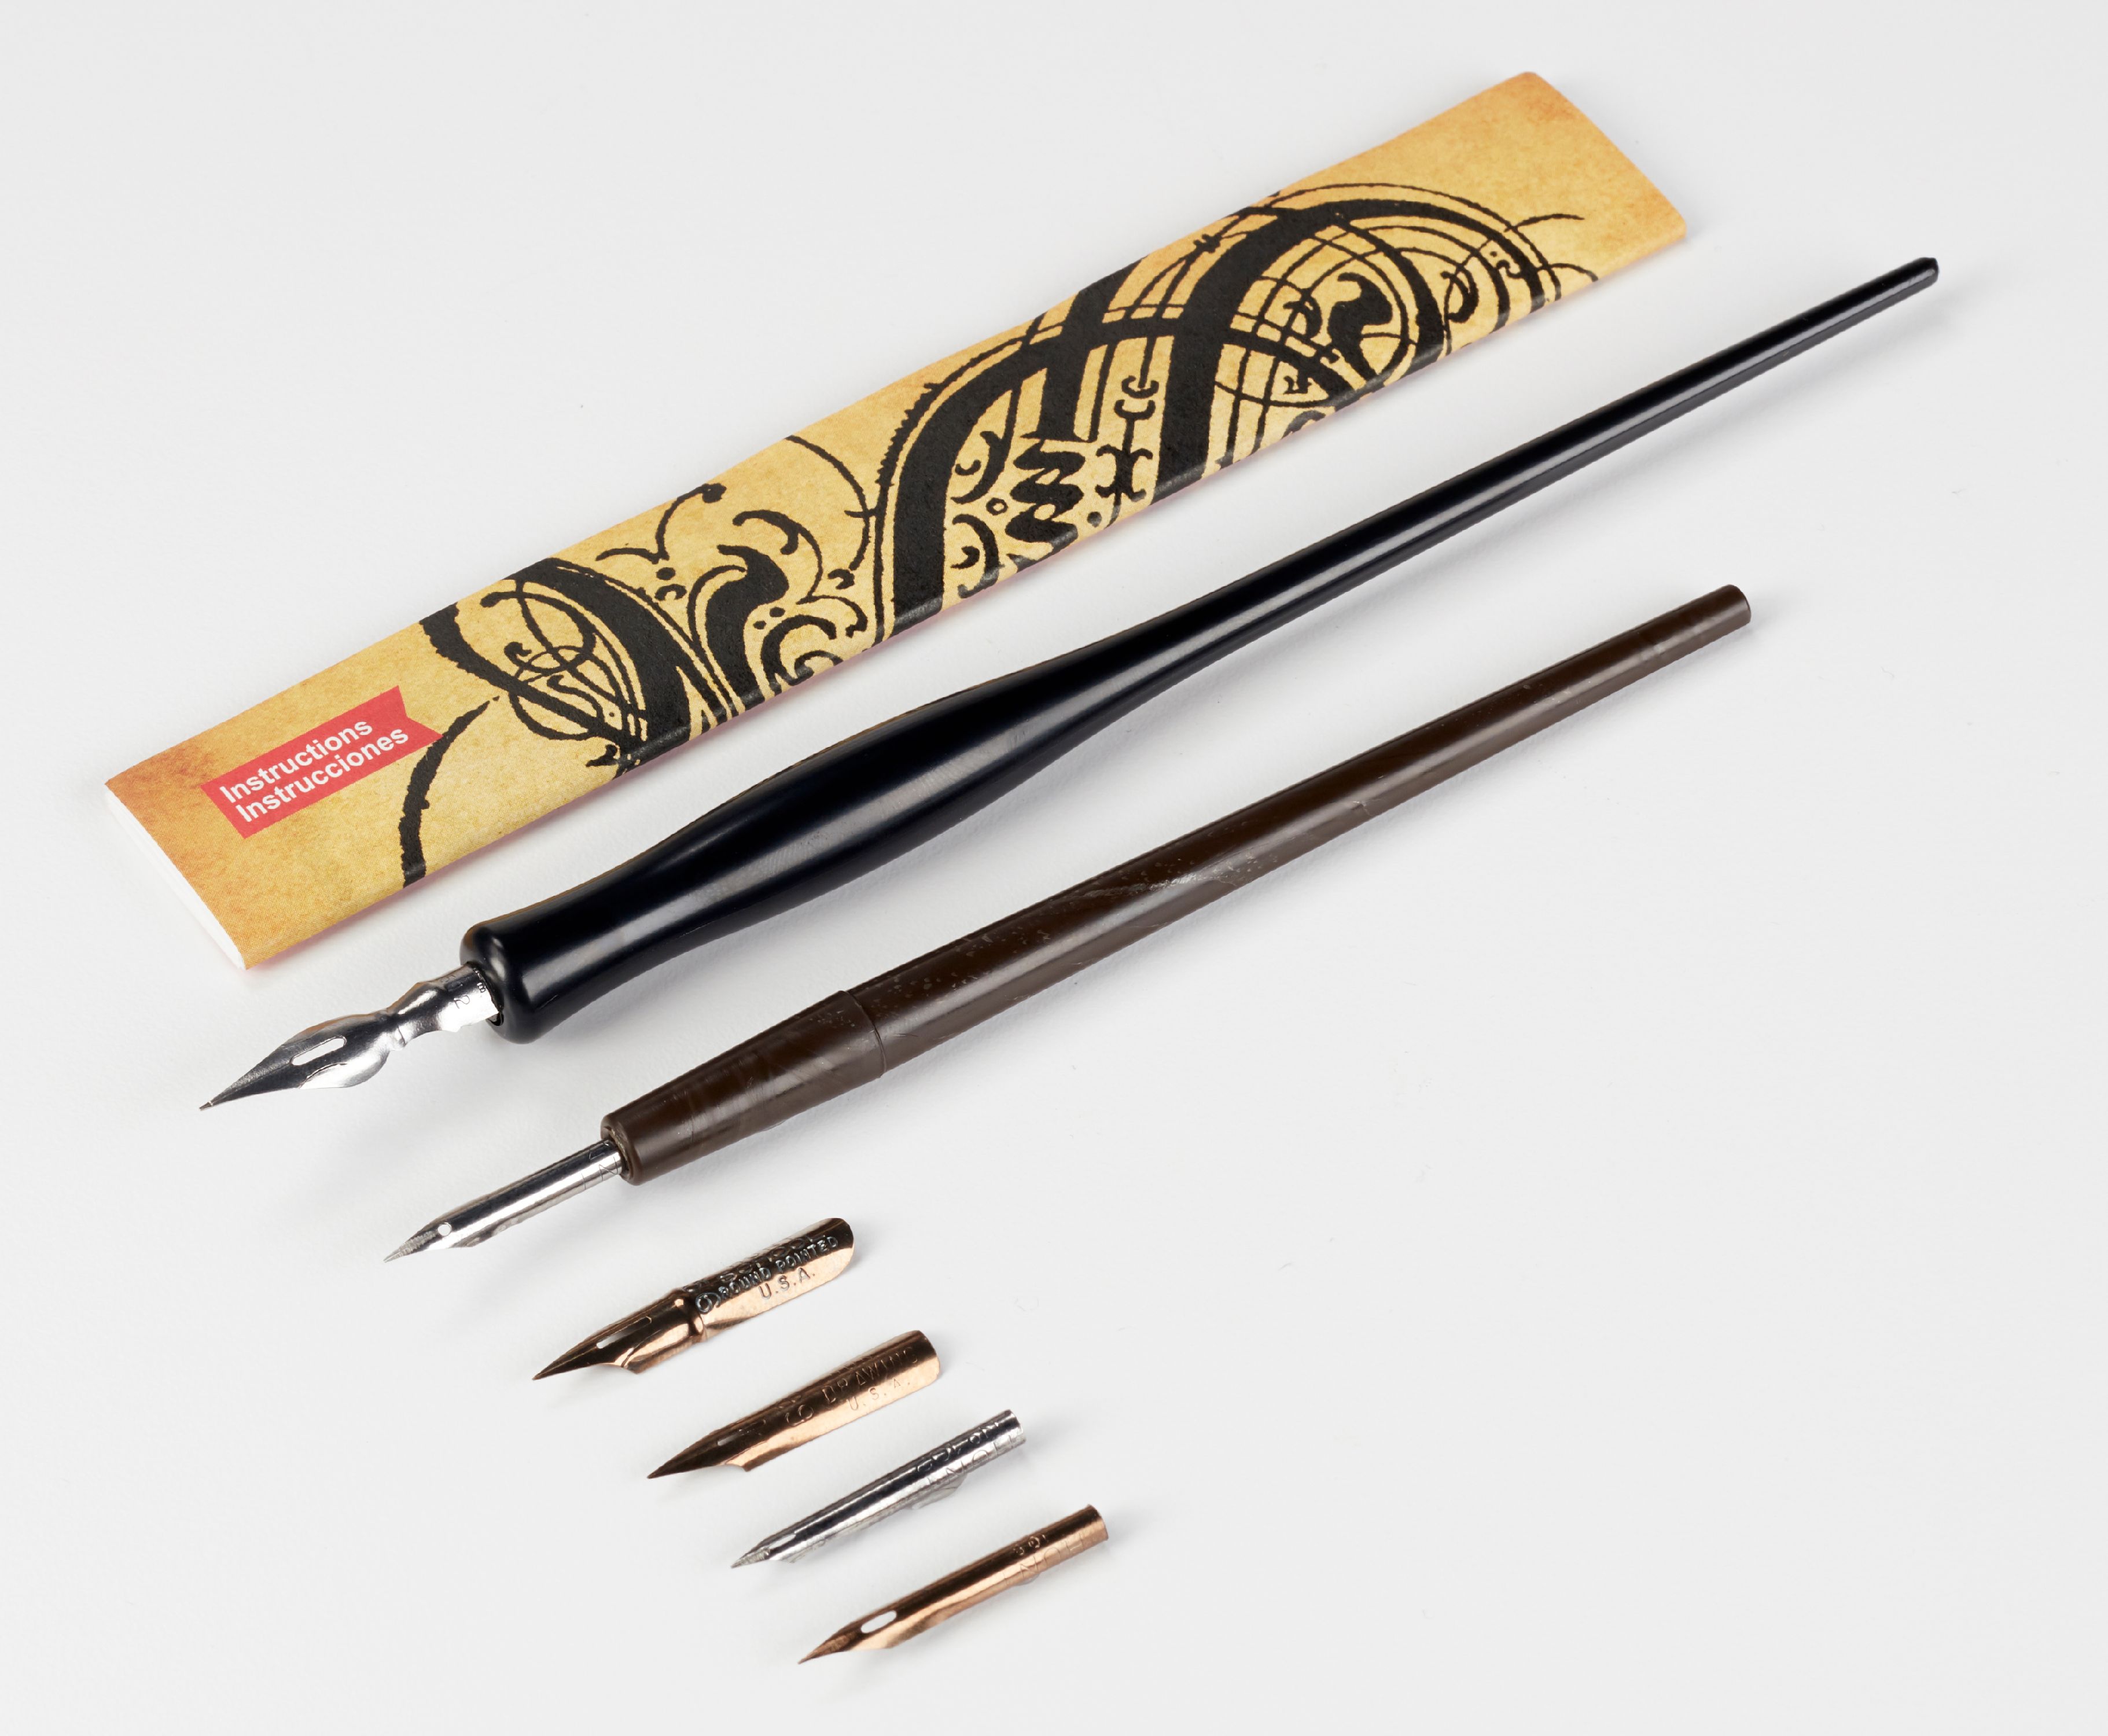 Speedball Sketching Calligraphy Pen Set, 6 Dip Pen Nibs & 2